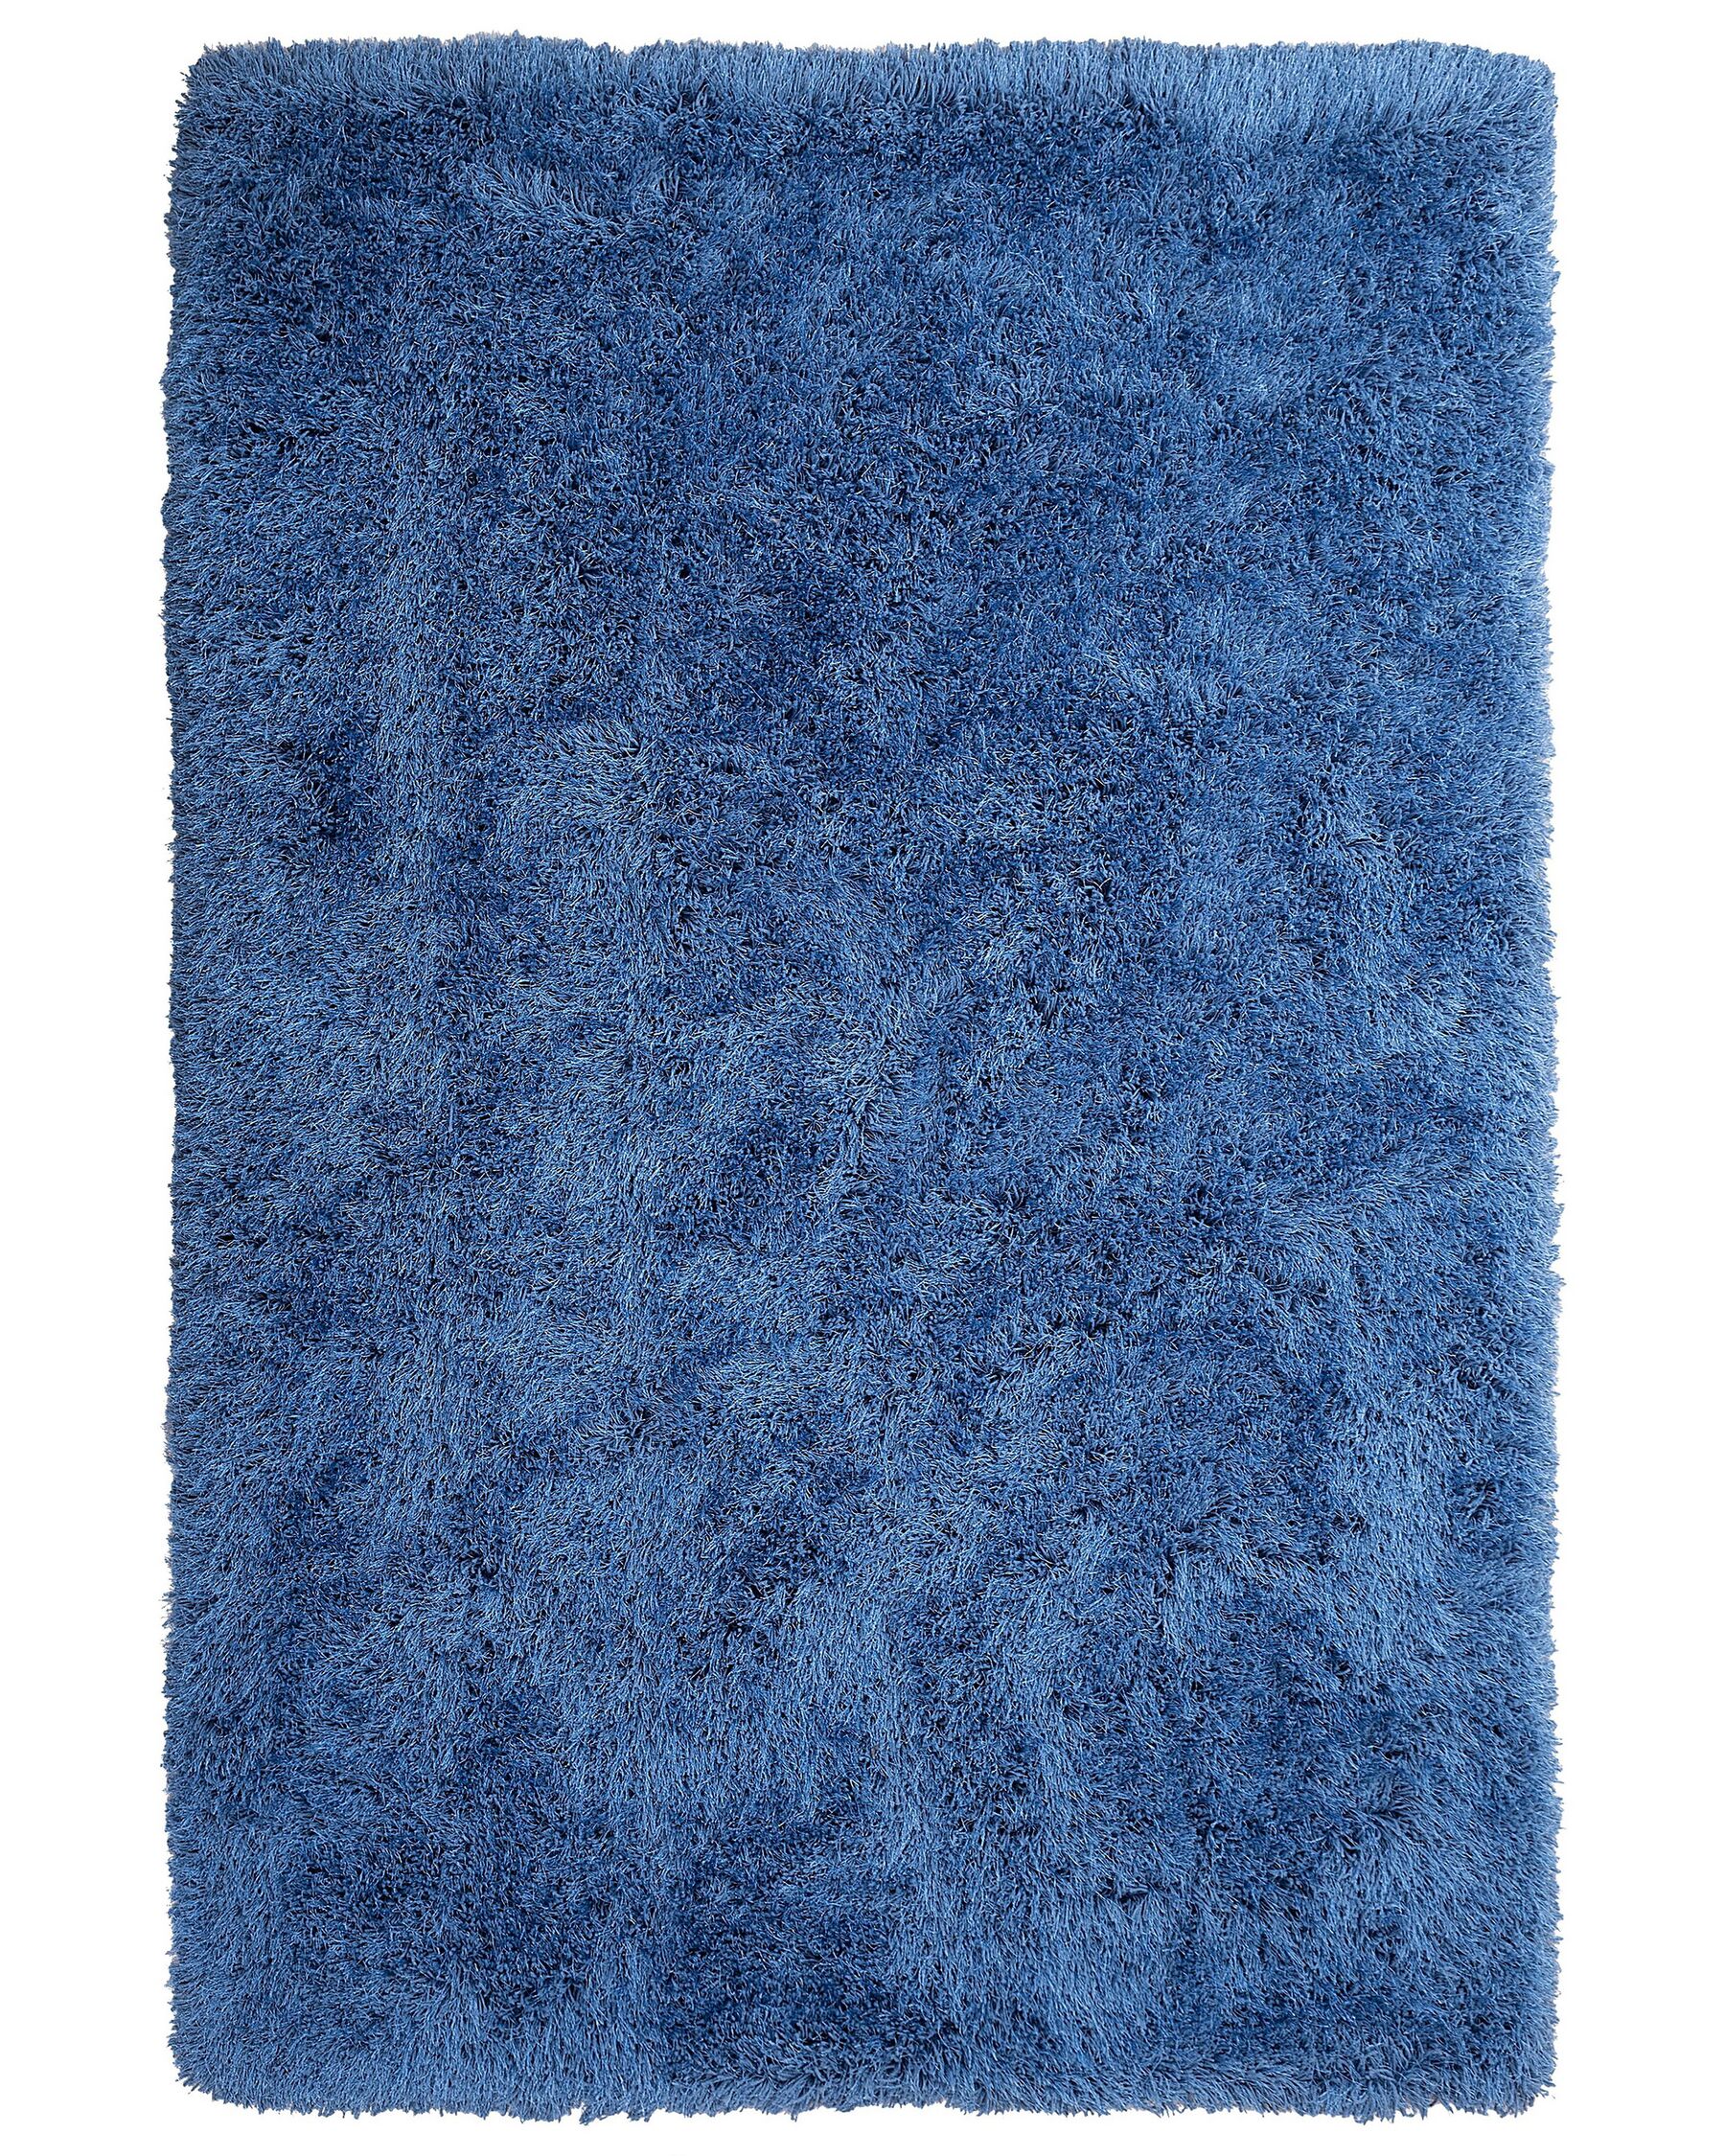 Tappeto shaggy rettangolare blu 140 x 200 cm CIDE_746862